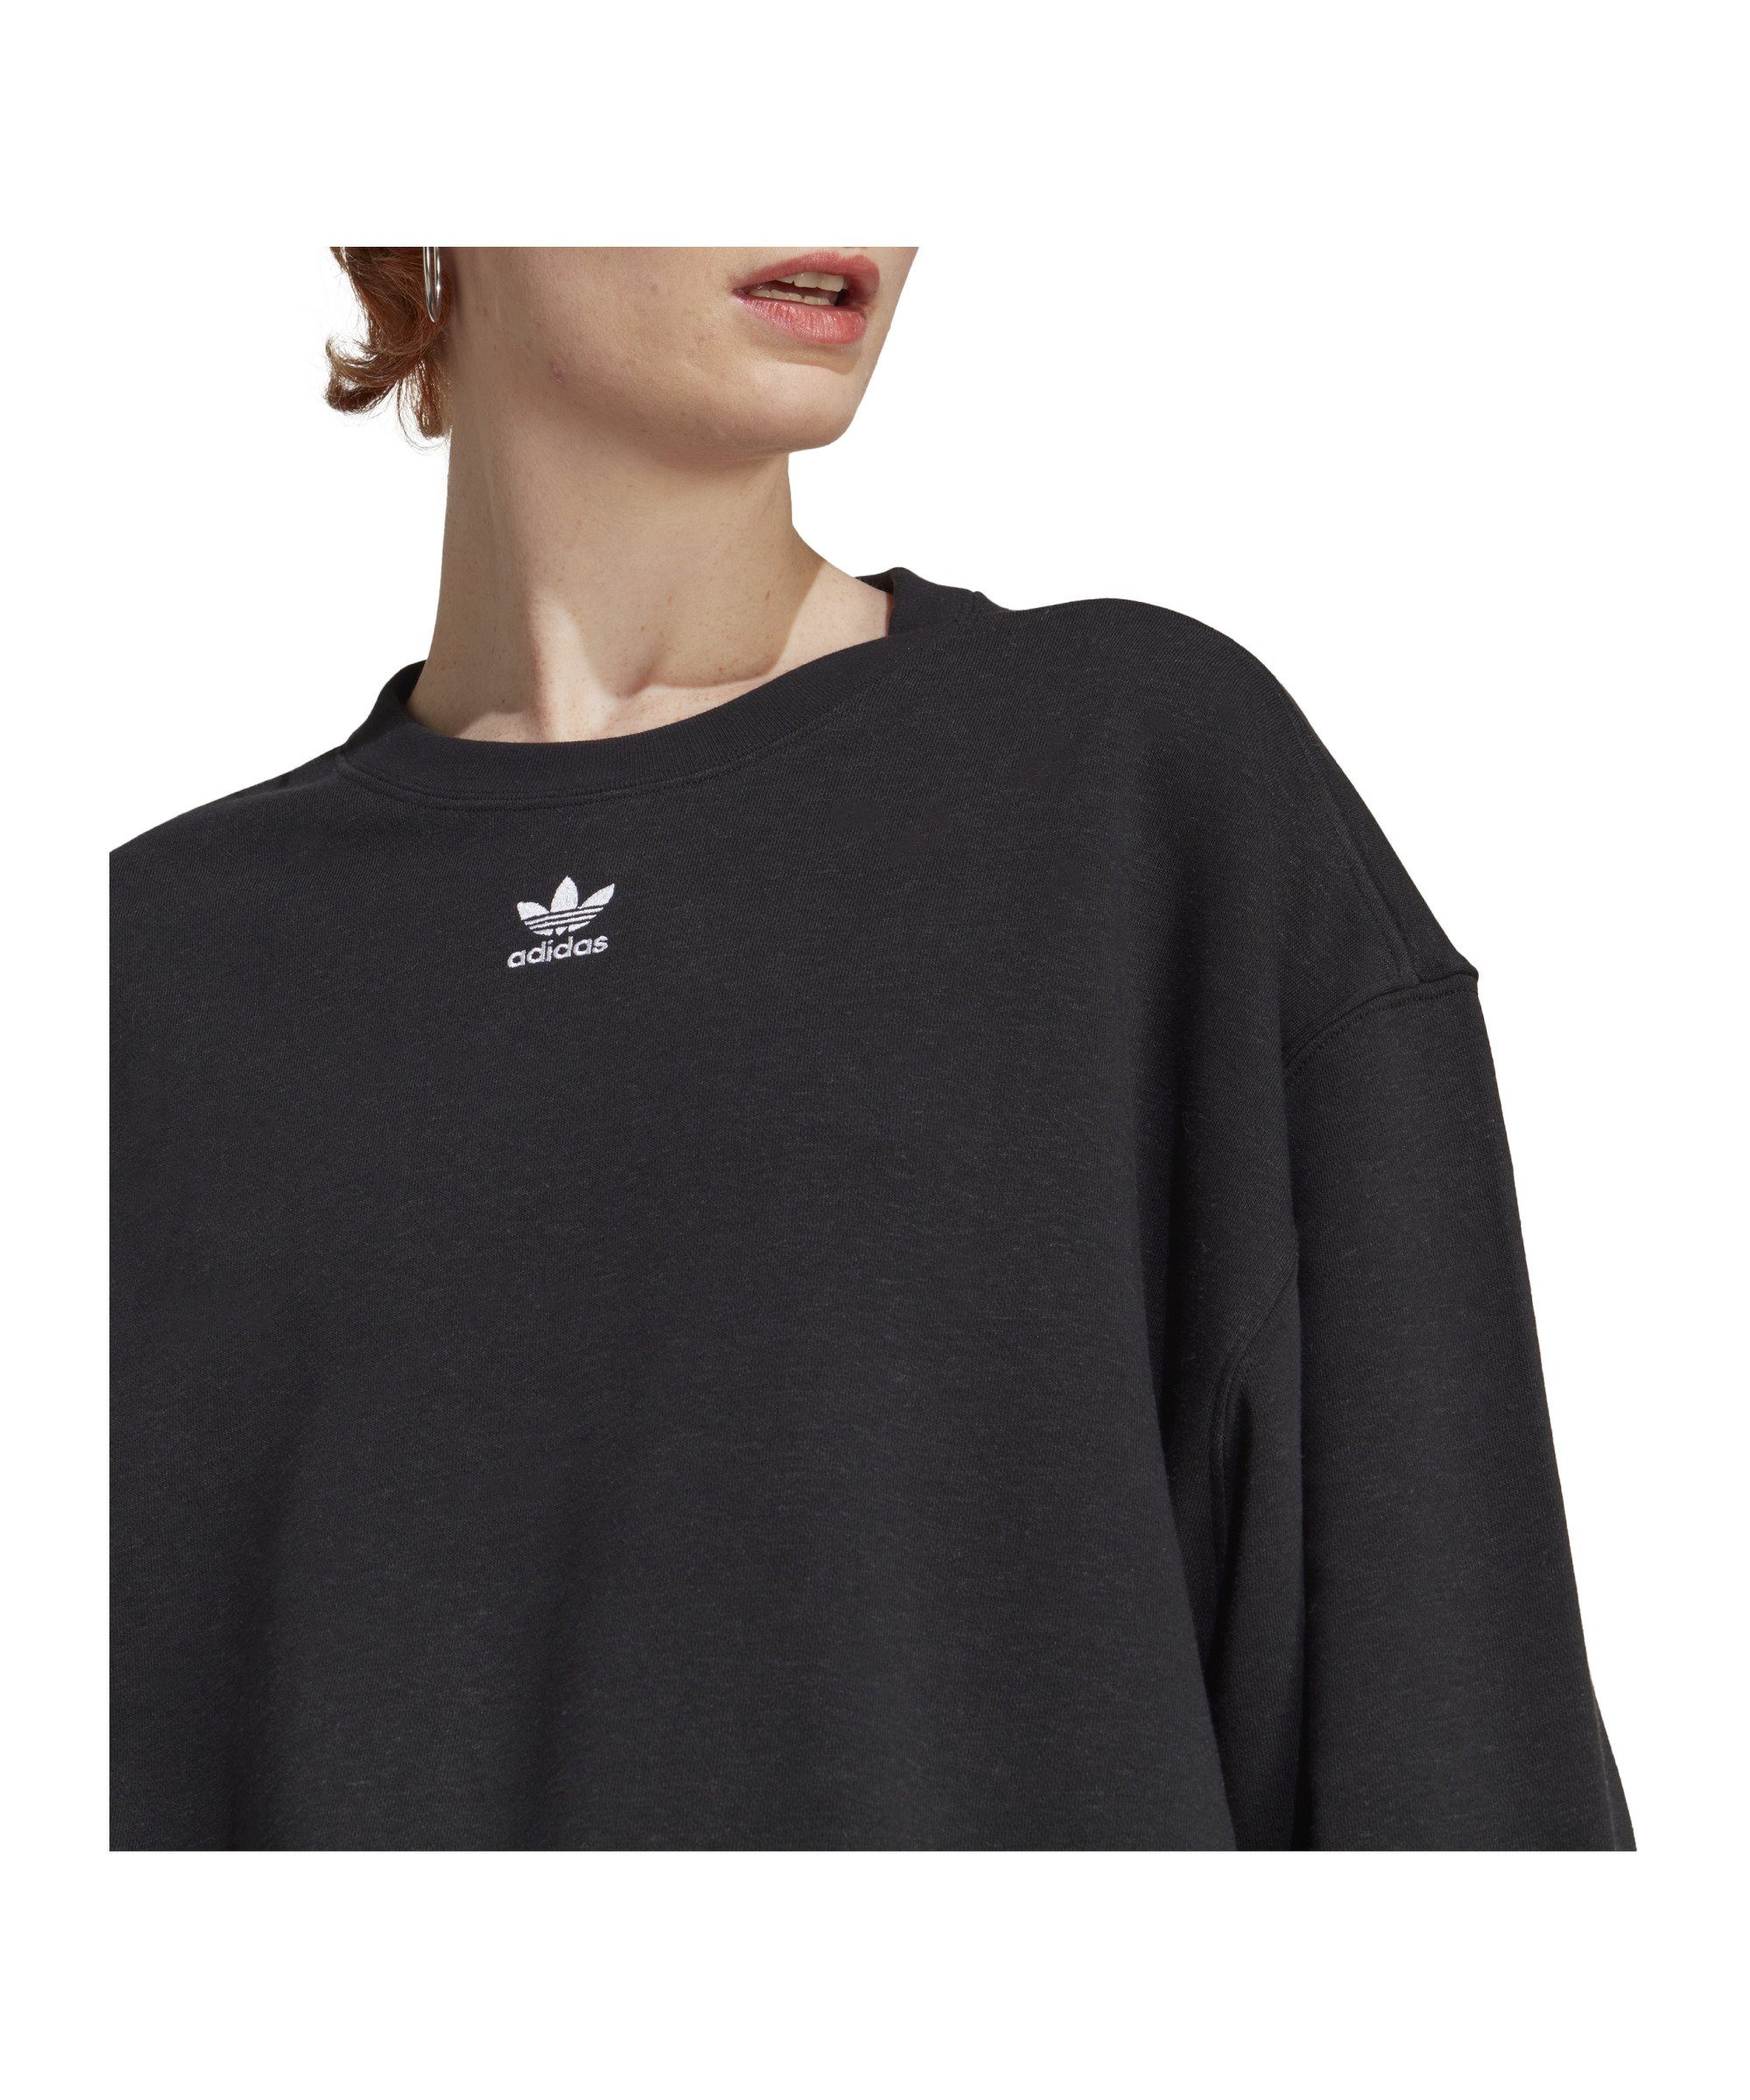 adidas Originals Sweater Damen schwarz Sweatshirt Ess